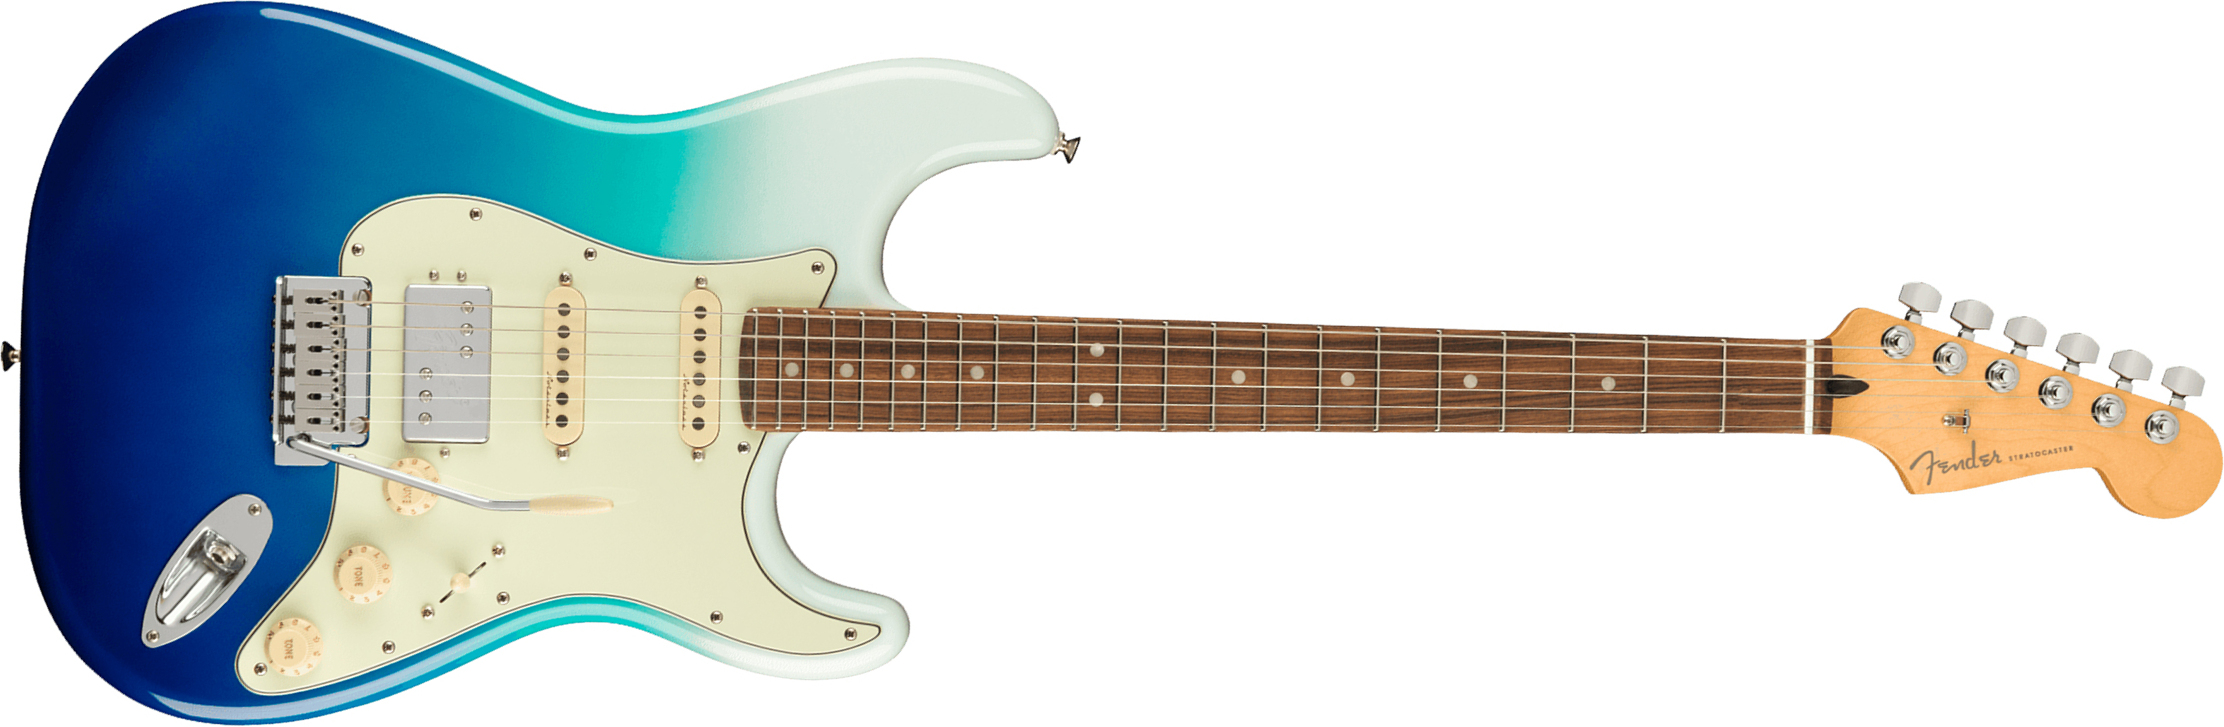 Fender Strat Player Plus Mex Hss Trem Pf - Belair Blue - Str shape electric guitar - Main picture